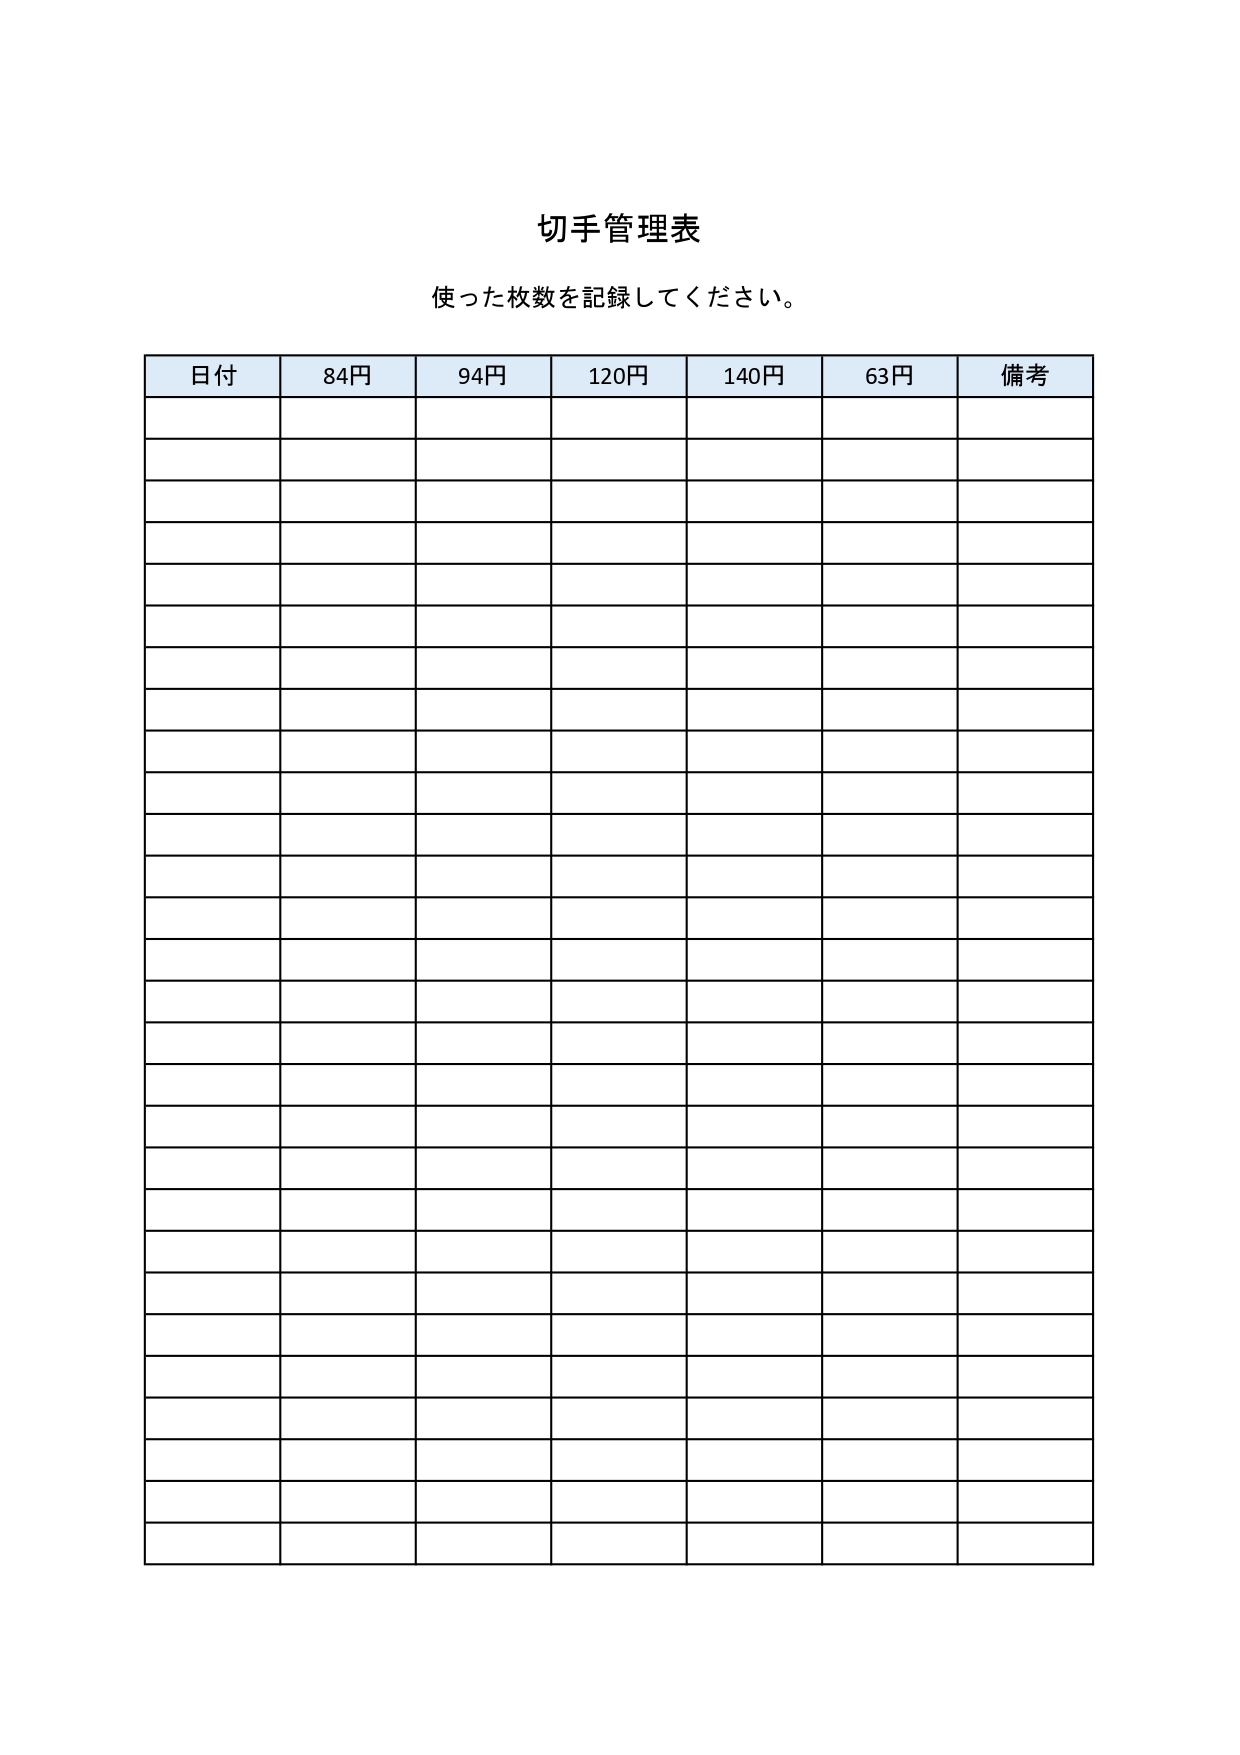 ビジネスを想定した切手管理表「Excel・Wordでシンプルに作成」PDFで手書き可能な無料テンプレート